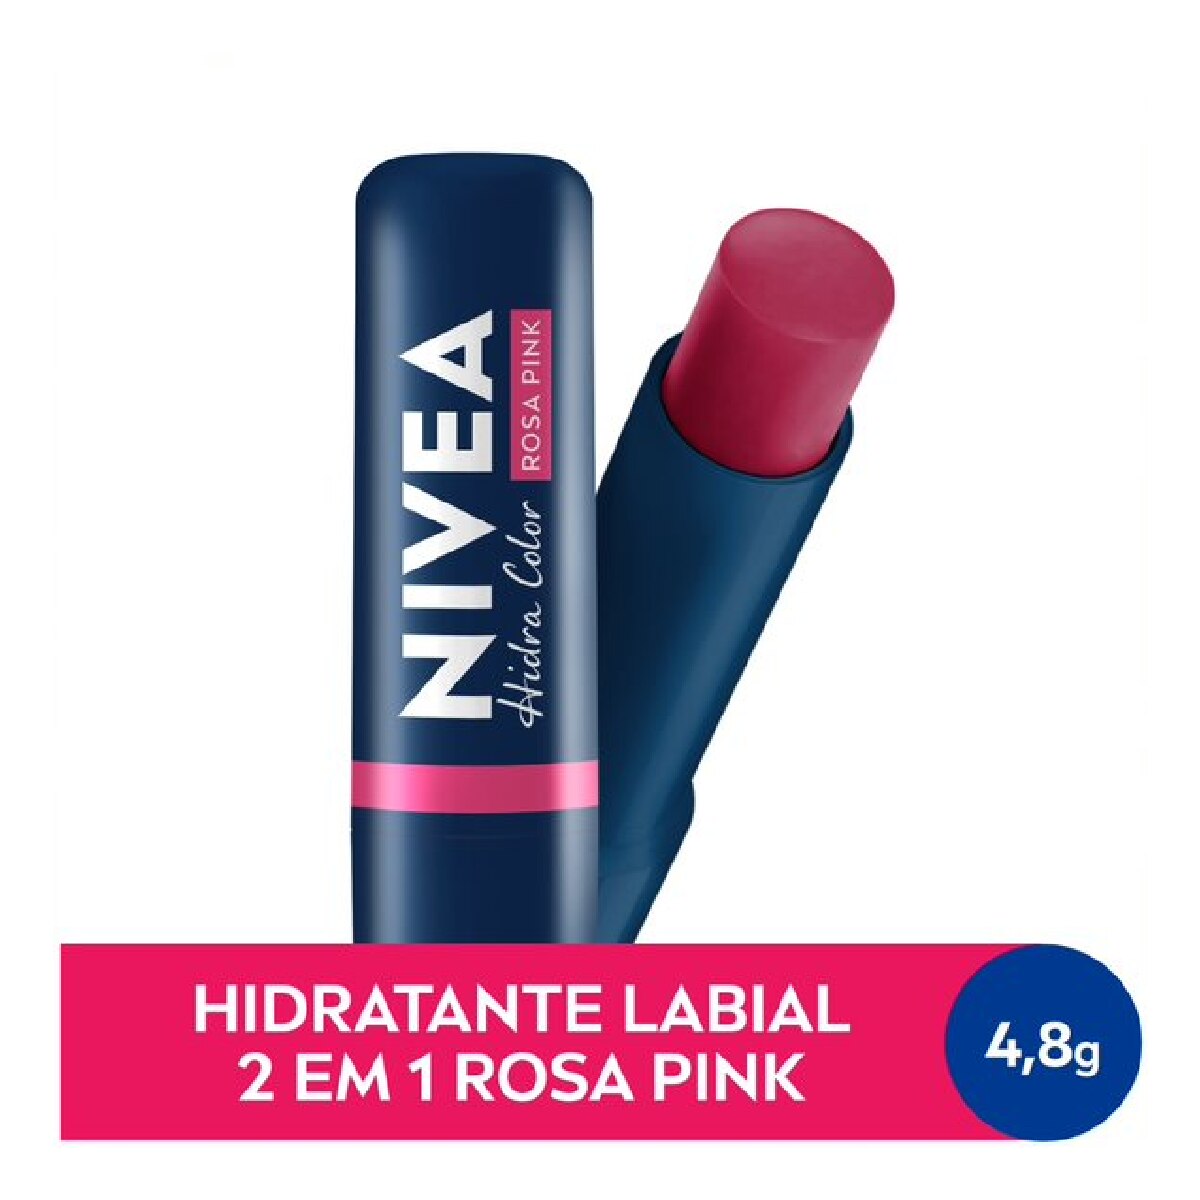 Hidratante Labial Nivea Hidra Color 2 em 1 Rosa Pink 4,8g